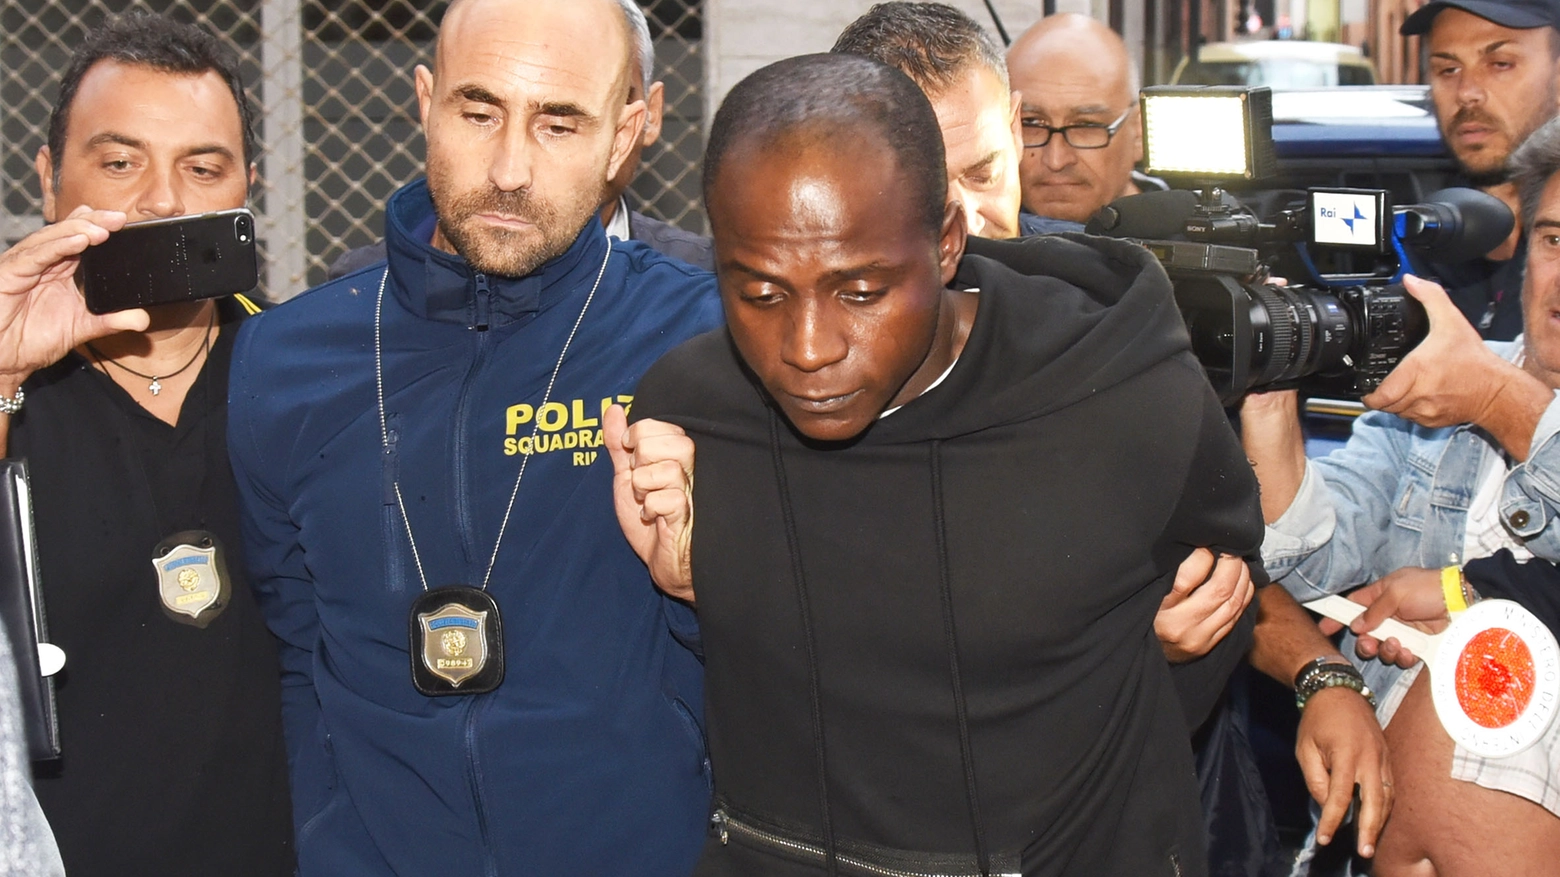 L'arresto di Guerlin Butungu, 20 anni, presunto capo branco di Rimini (foto Migliorini)